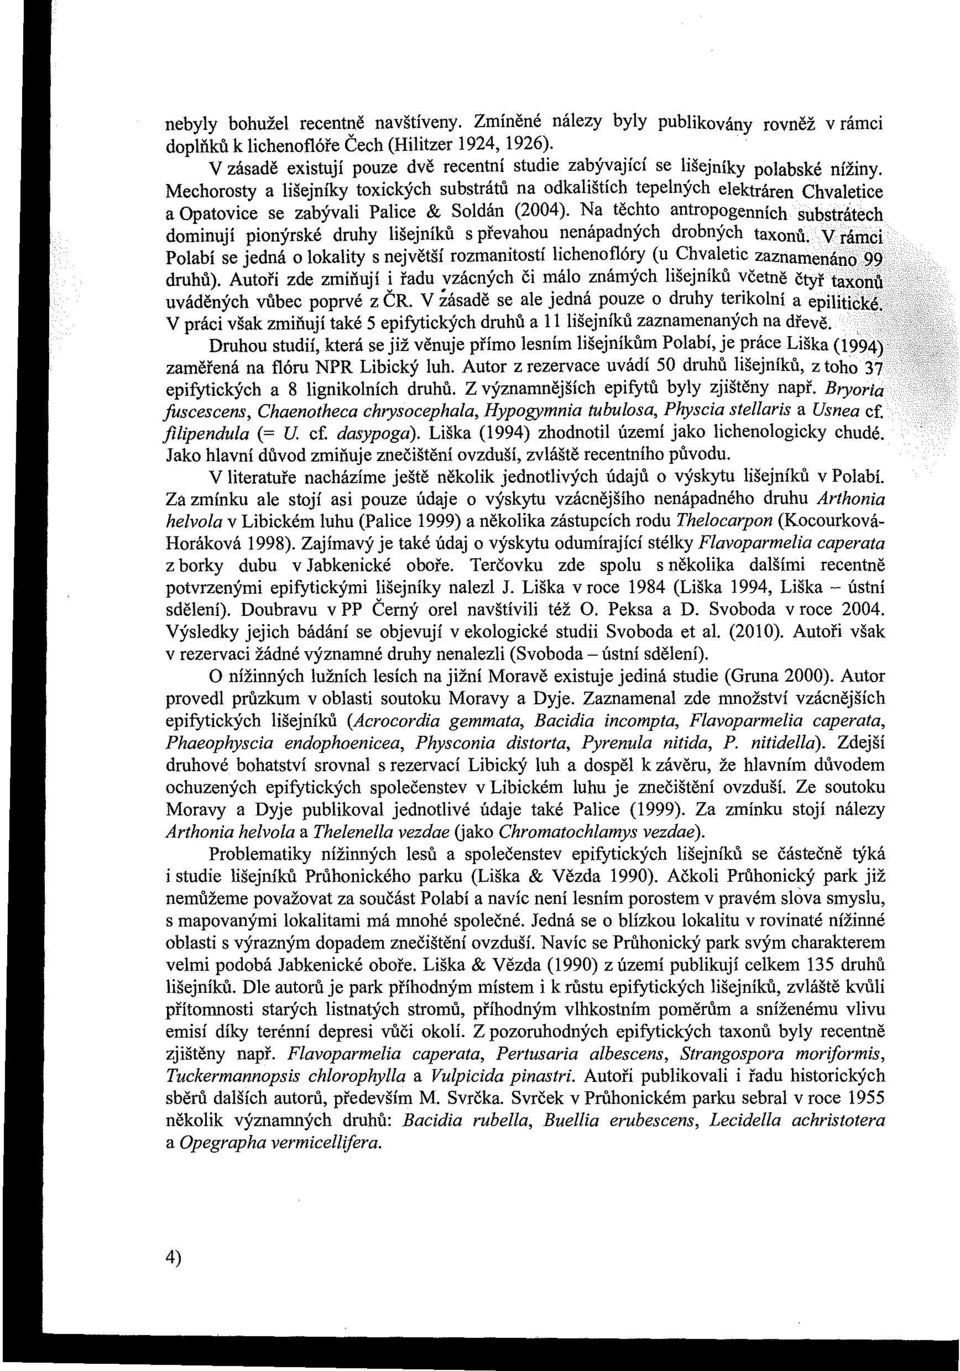 Mechorosty a lišejniky toxických substrátů na odkalištích tepelných elektráren Chvaletice a Opatovice se zabývali Palice & Soldán (2004).